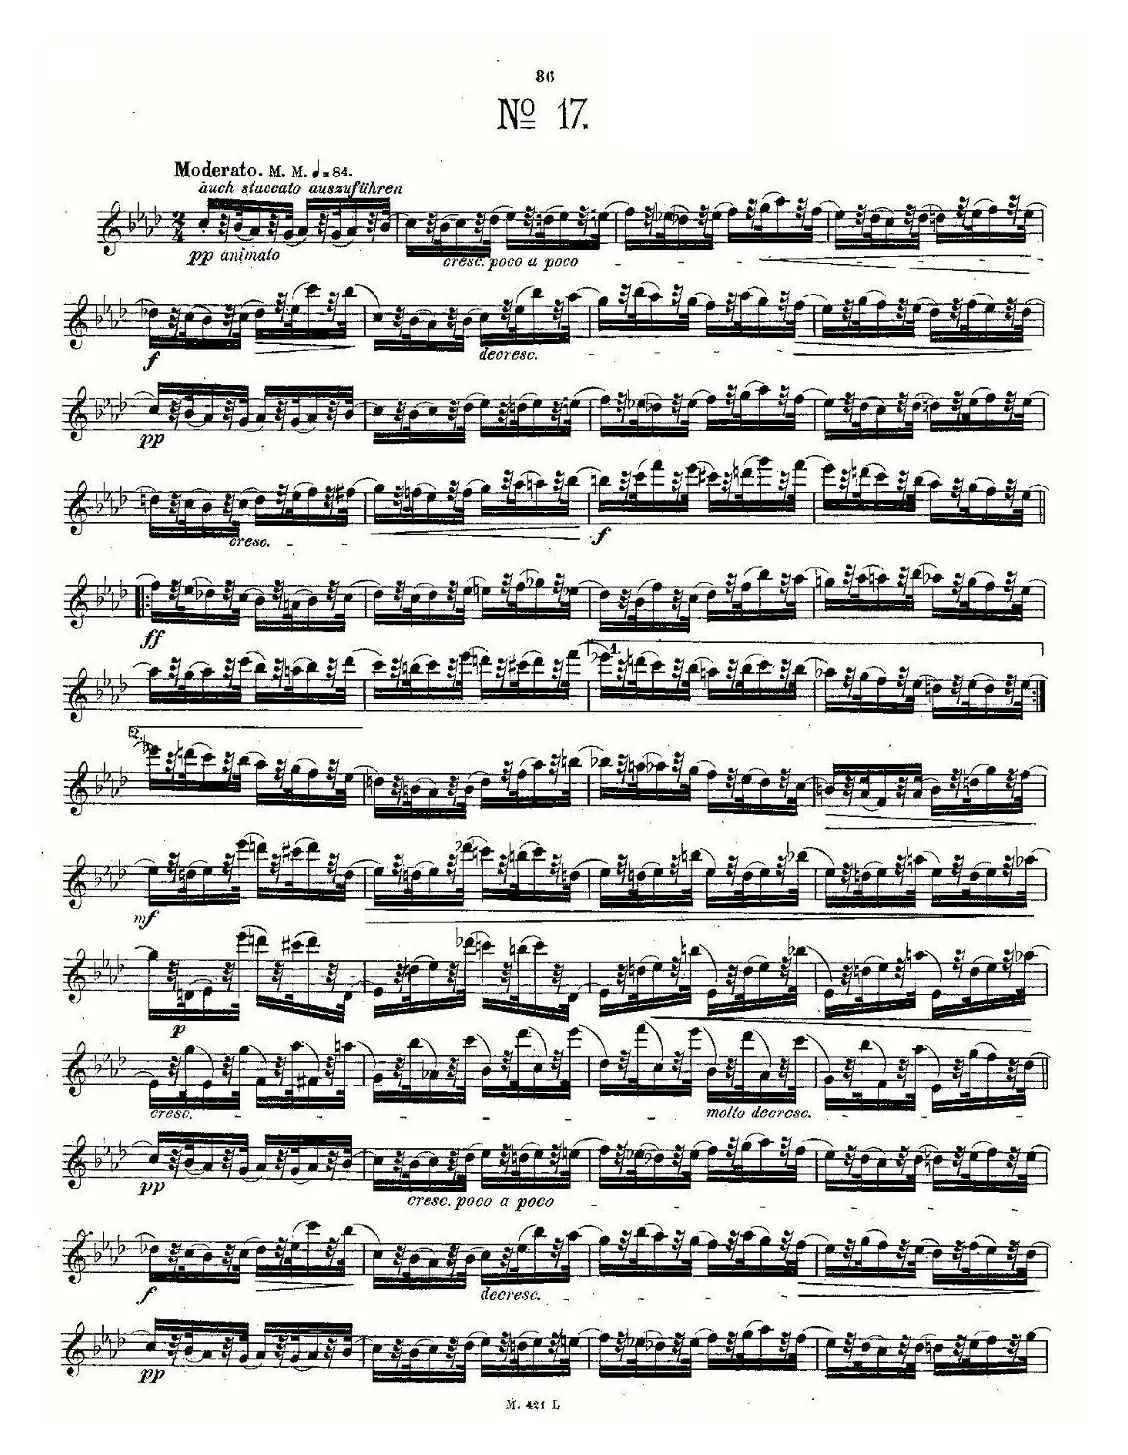 24首长笛练习曲 Op.15 之16—20